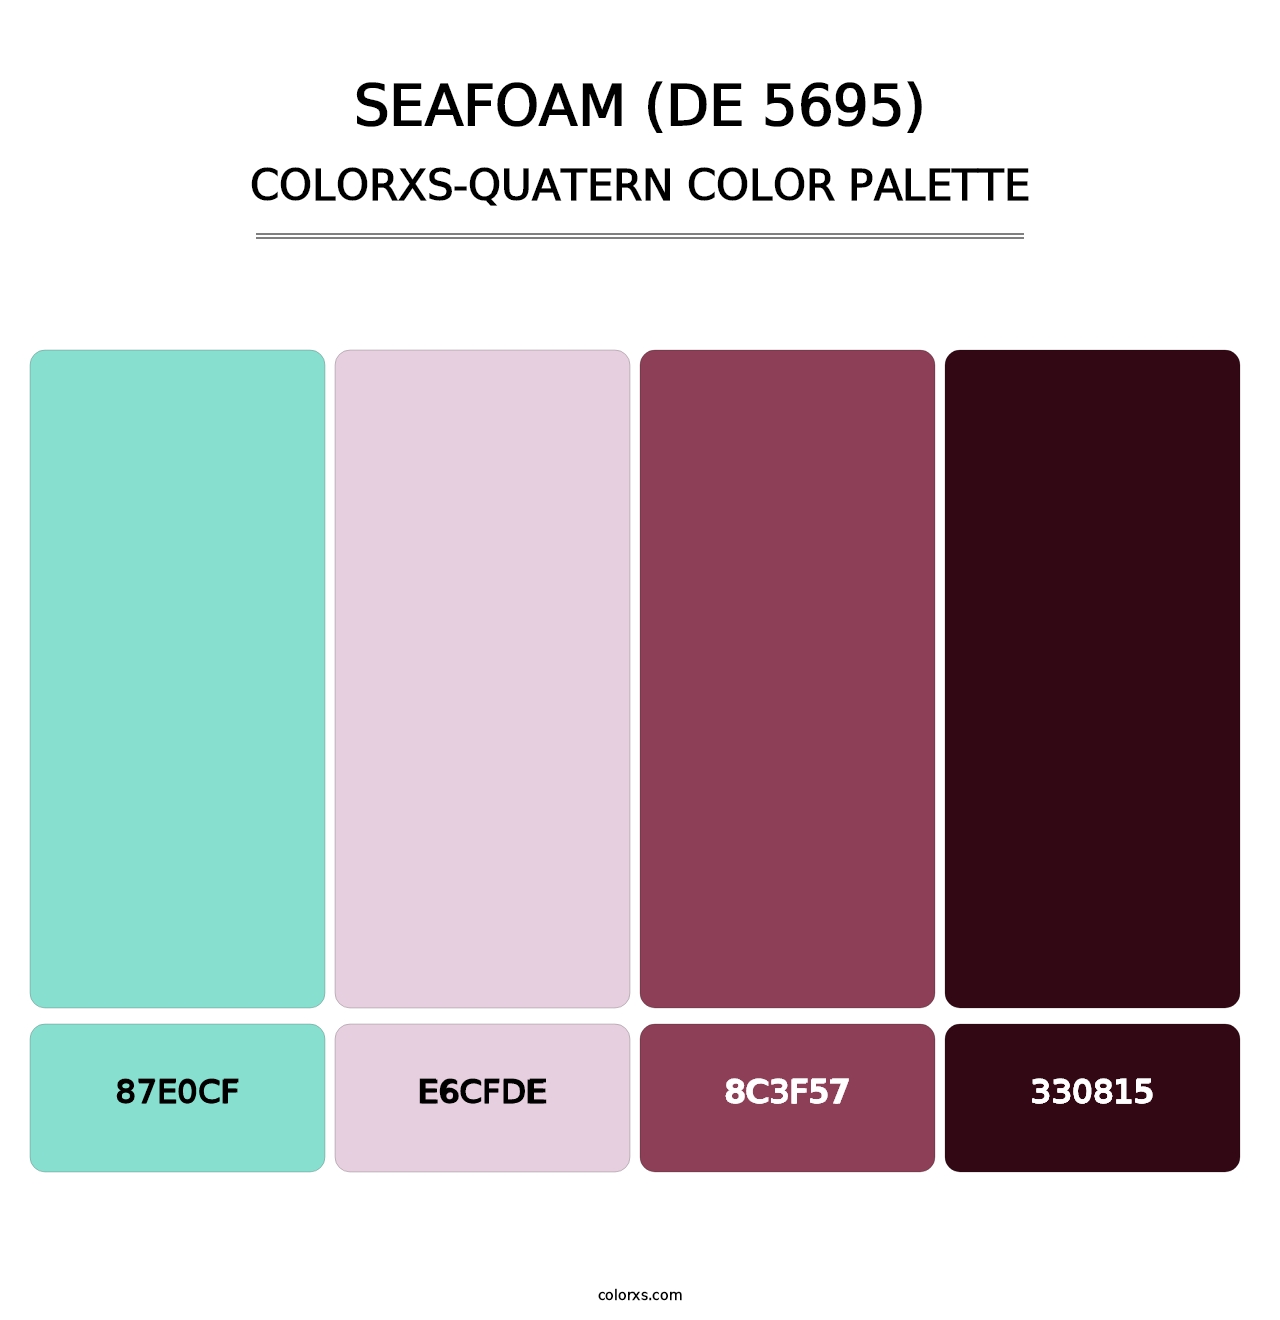 Seafoam (DE 5695) - Colorxs Quatern Palette